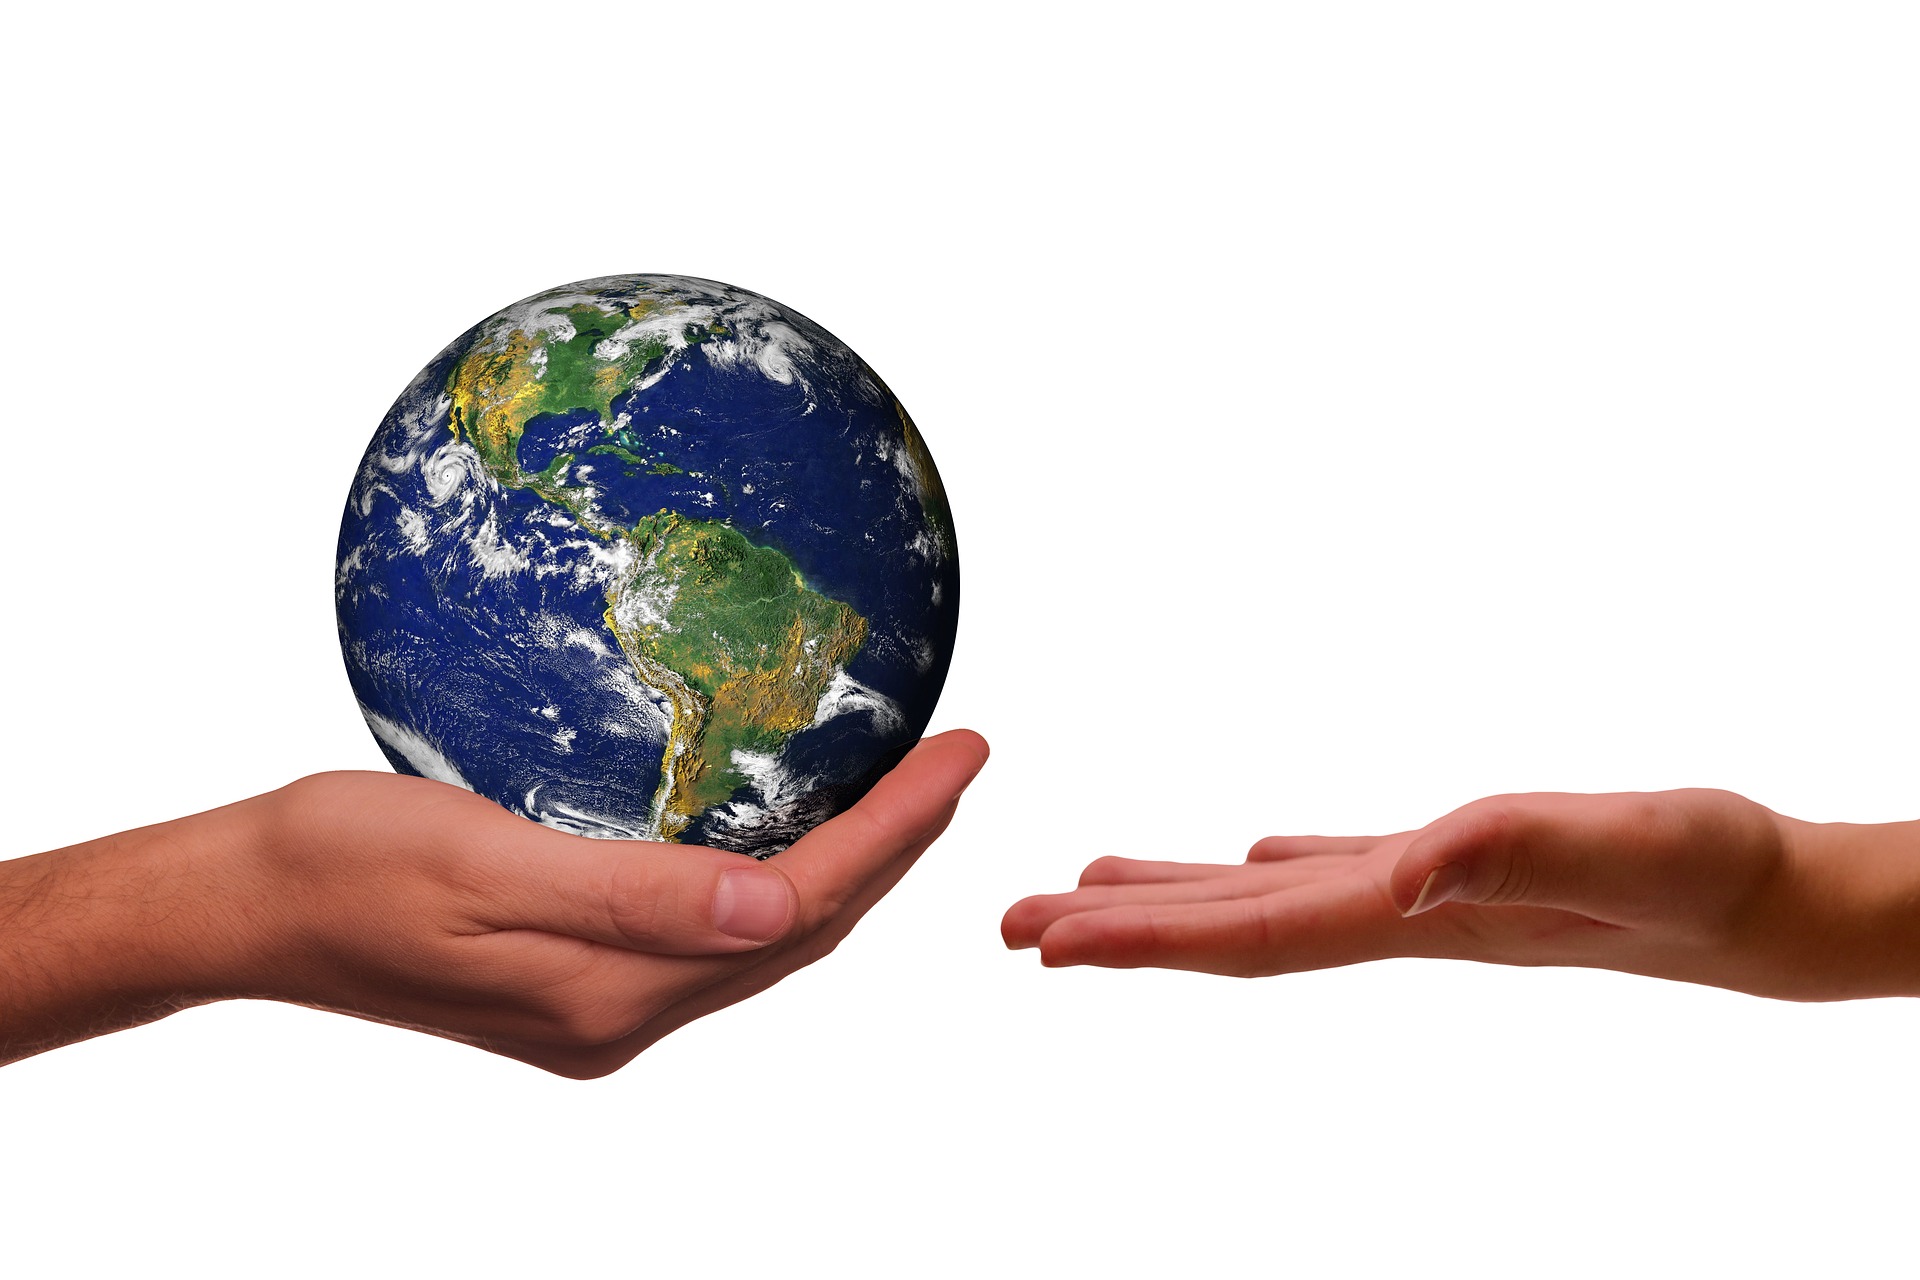 Bild: Hand die den Planet Erde hält, um ihn einer anderen Hand sicher zu überreichen.